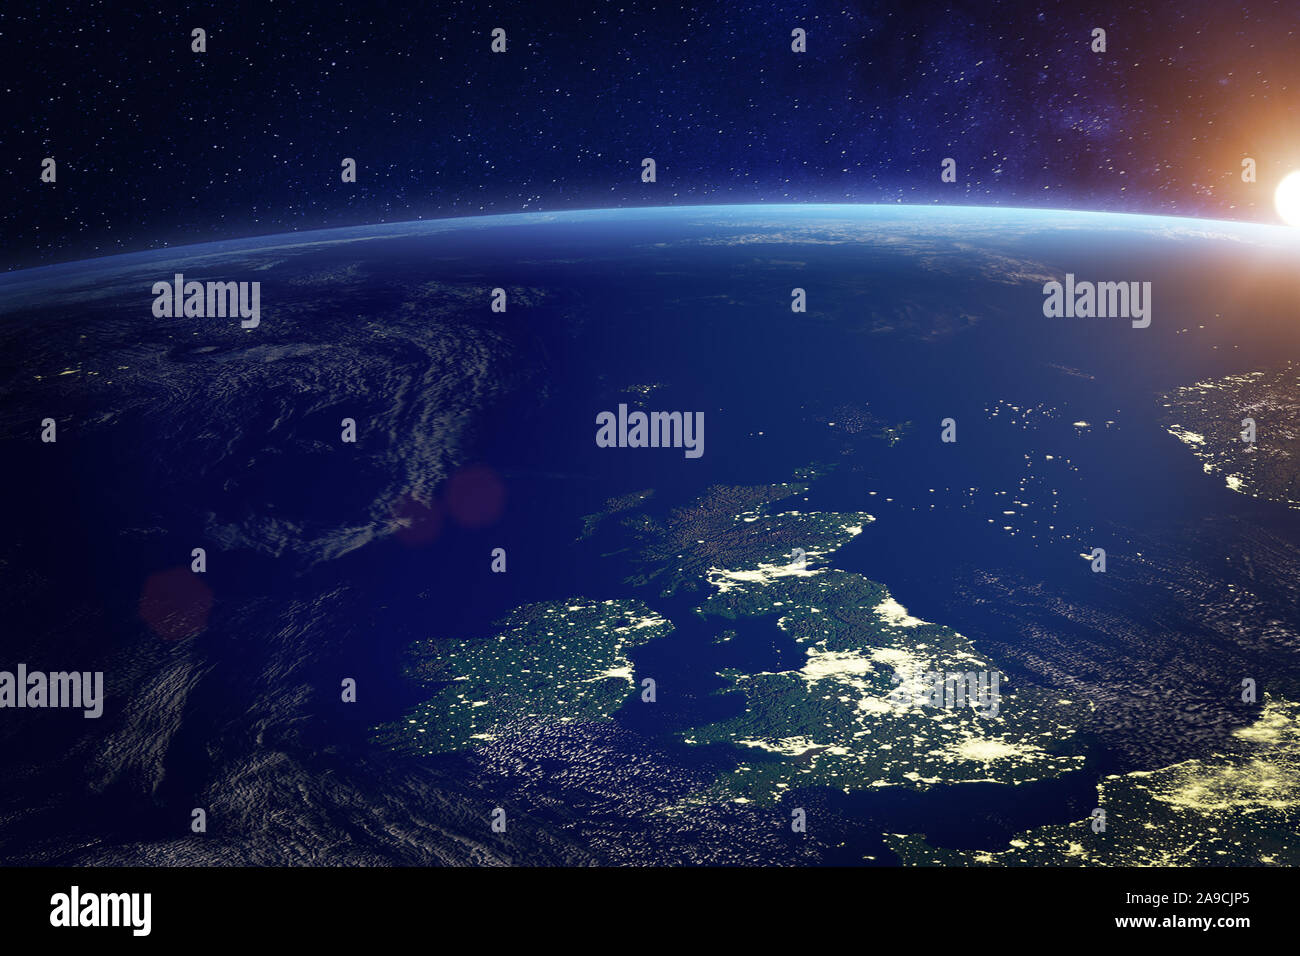 Vereinigtes Königreich (UK) aus dem Weltraum bei Nacht mit den Lichtern der Stadt der Stadt London, England, Wales, Schottland, Nordirland, Kommunikationstechnik, Stockfoto